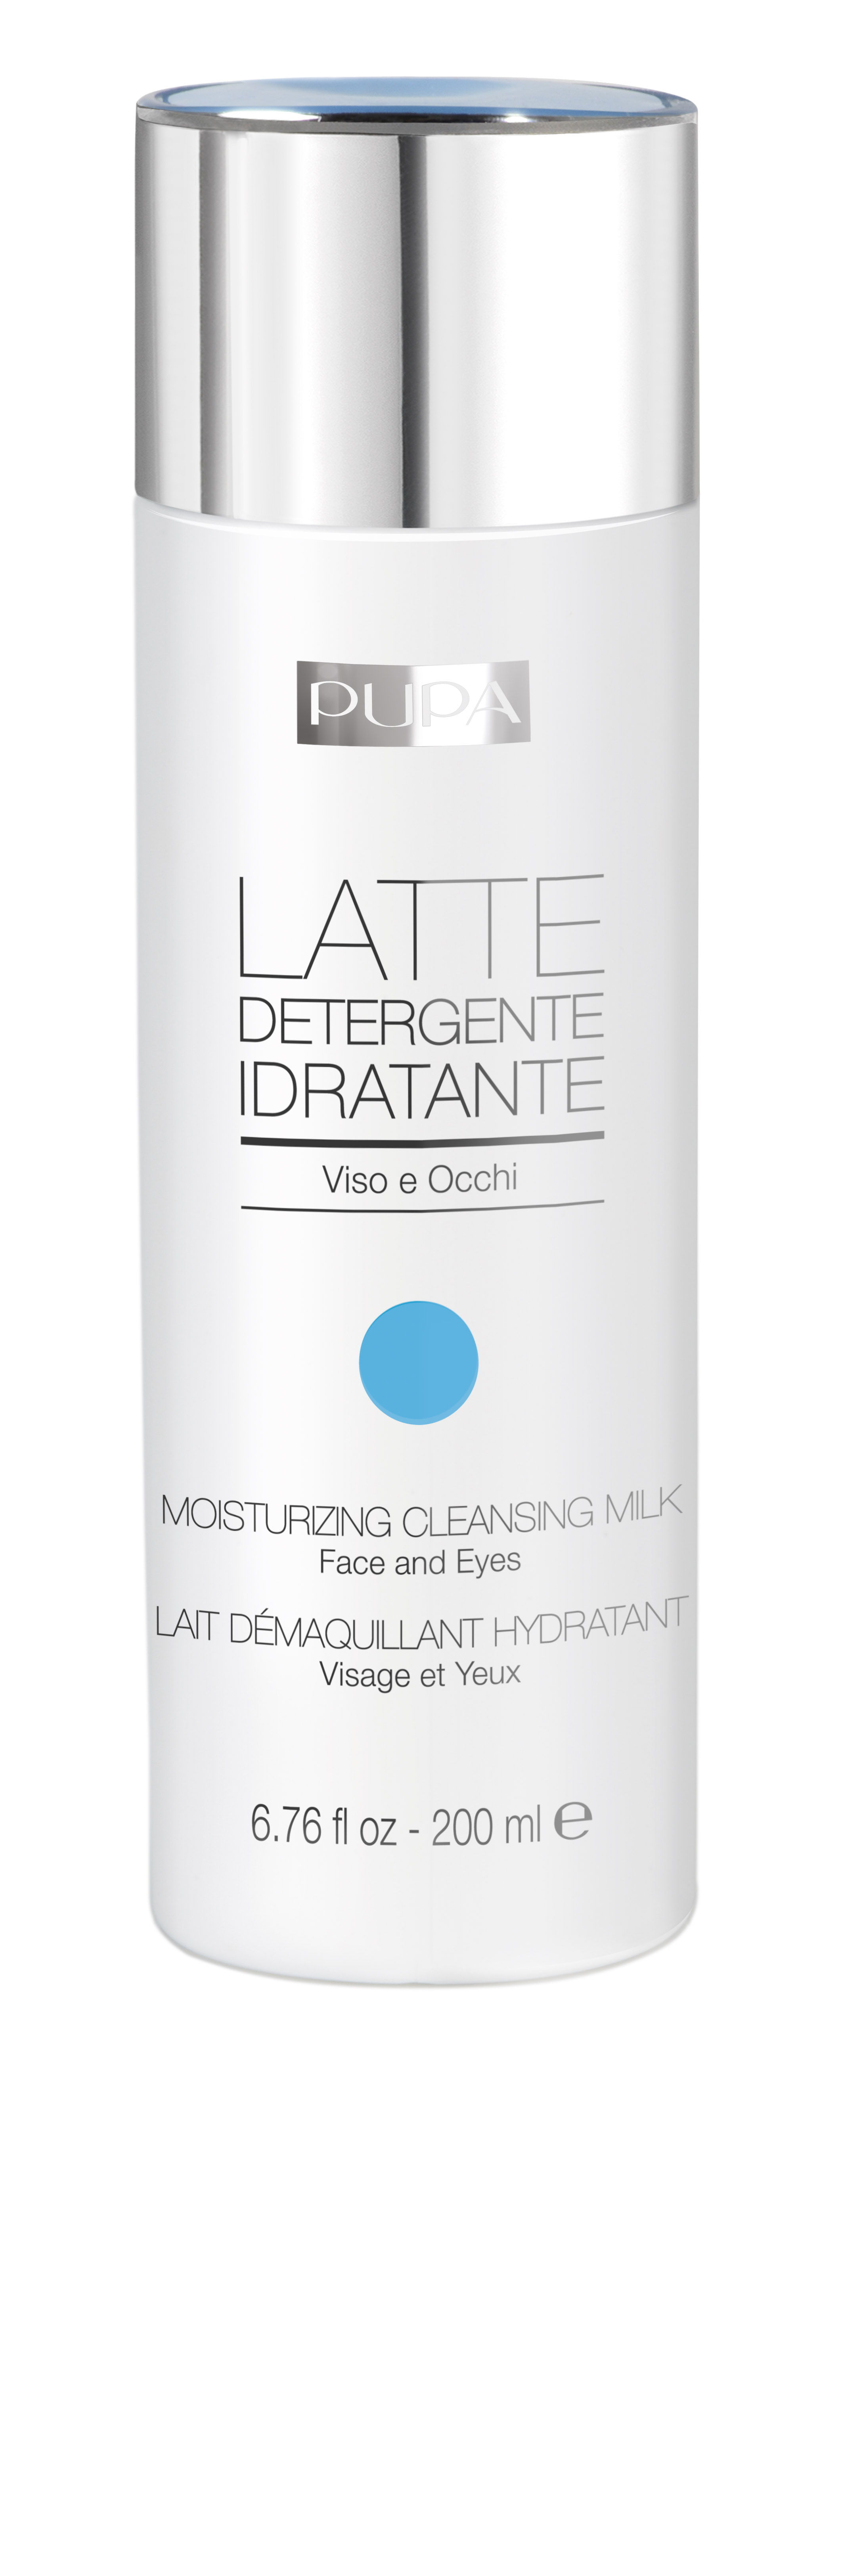 latte_detergente_idratante.jpg